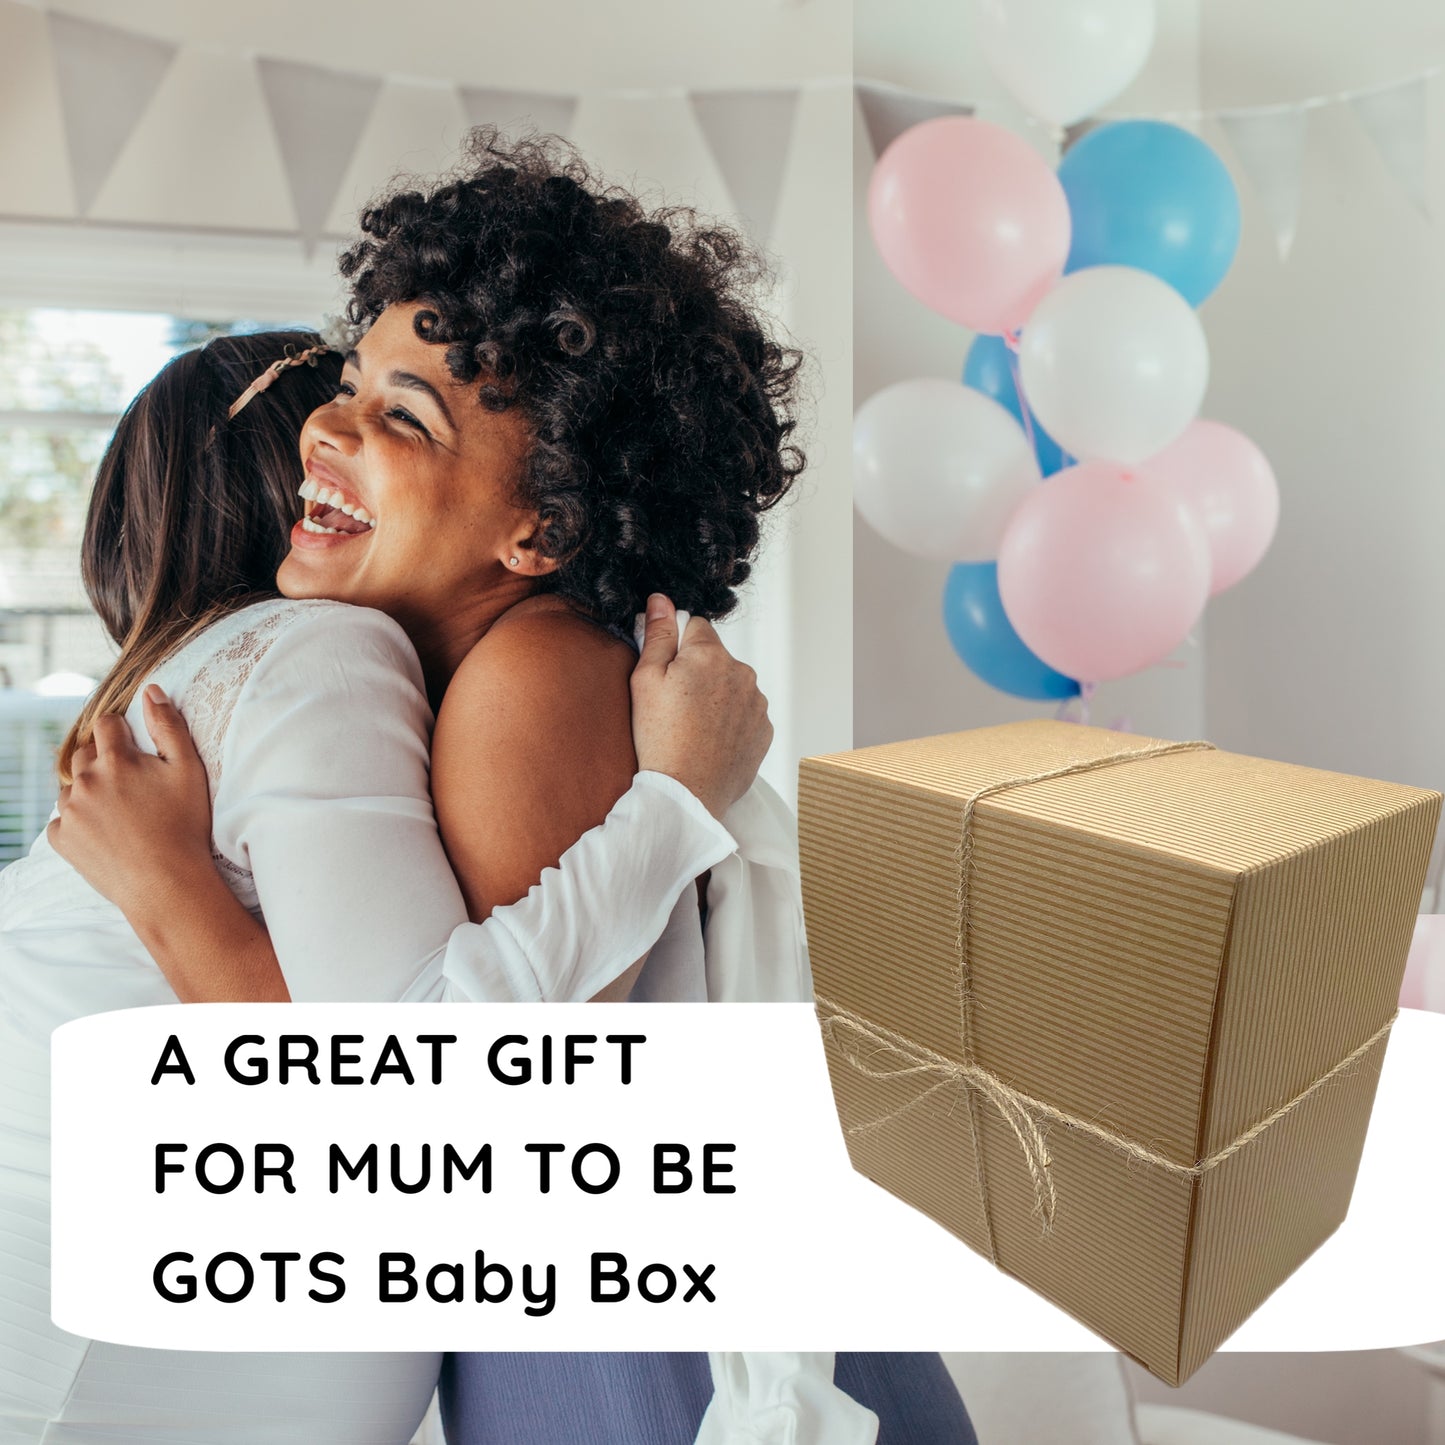 GOTS baby & mum gift box - blue